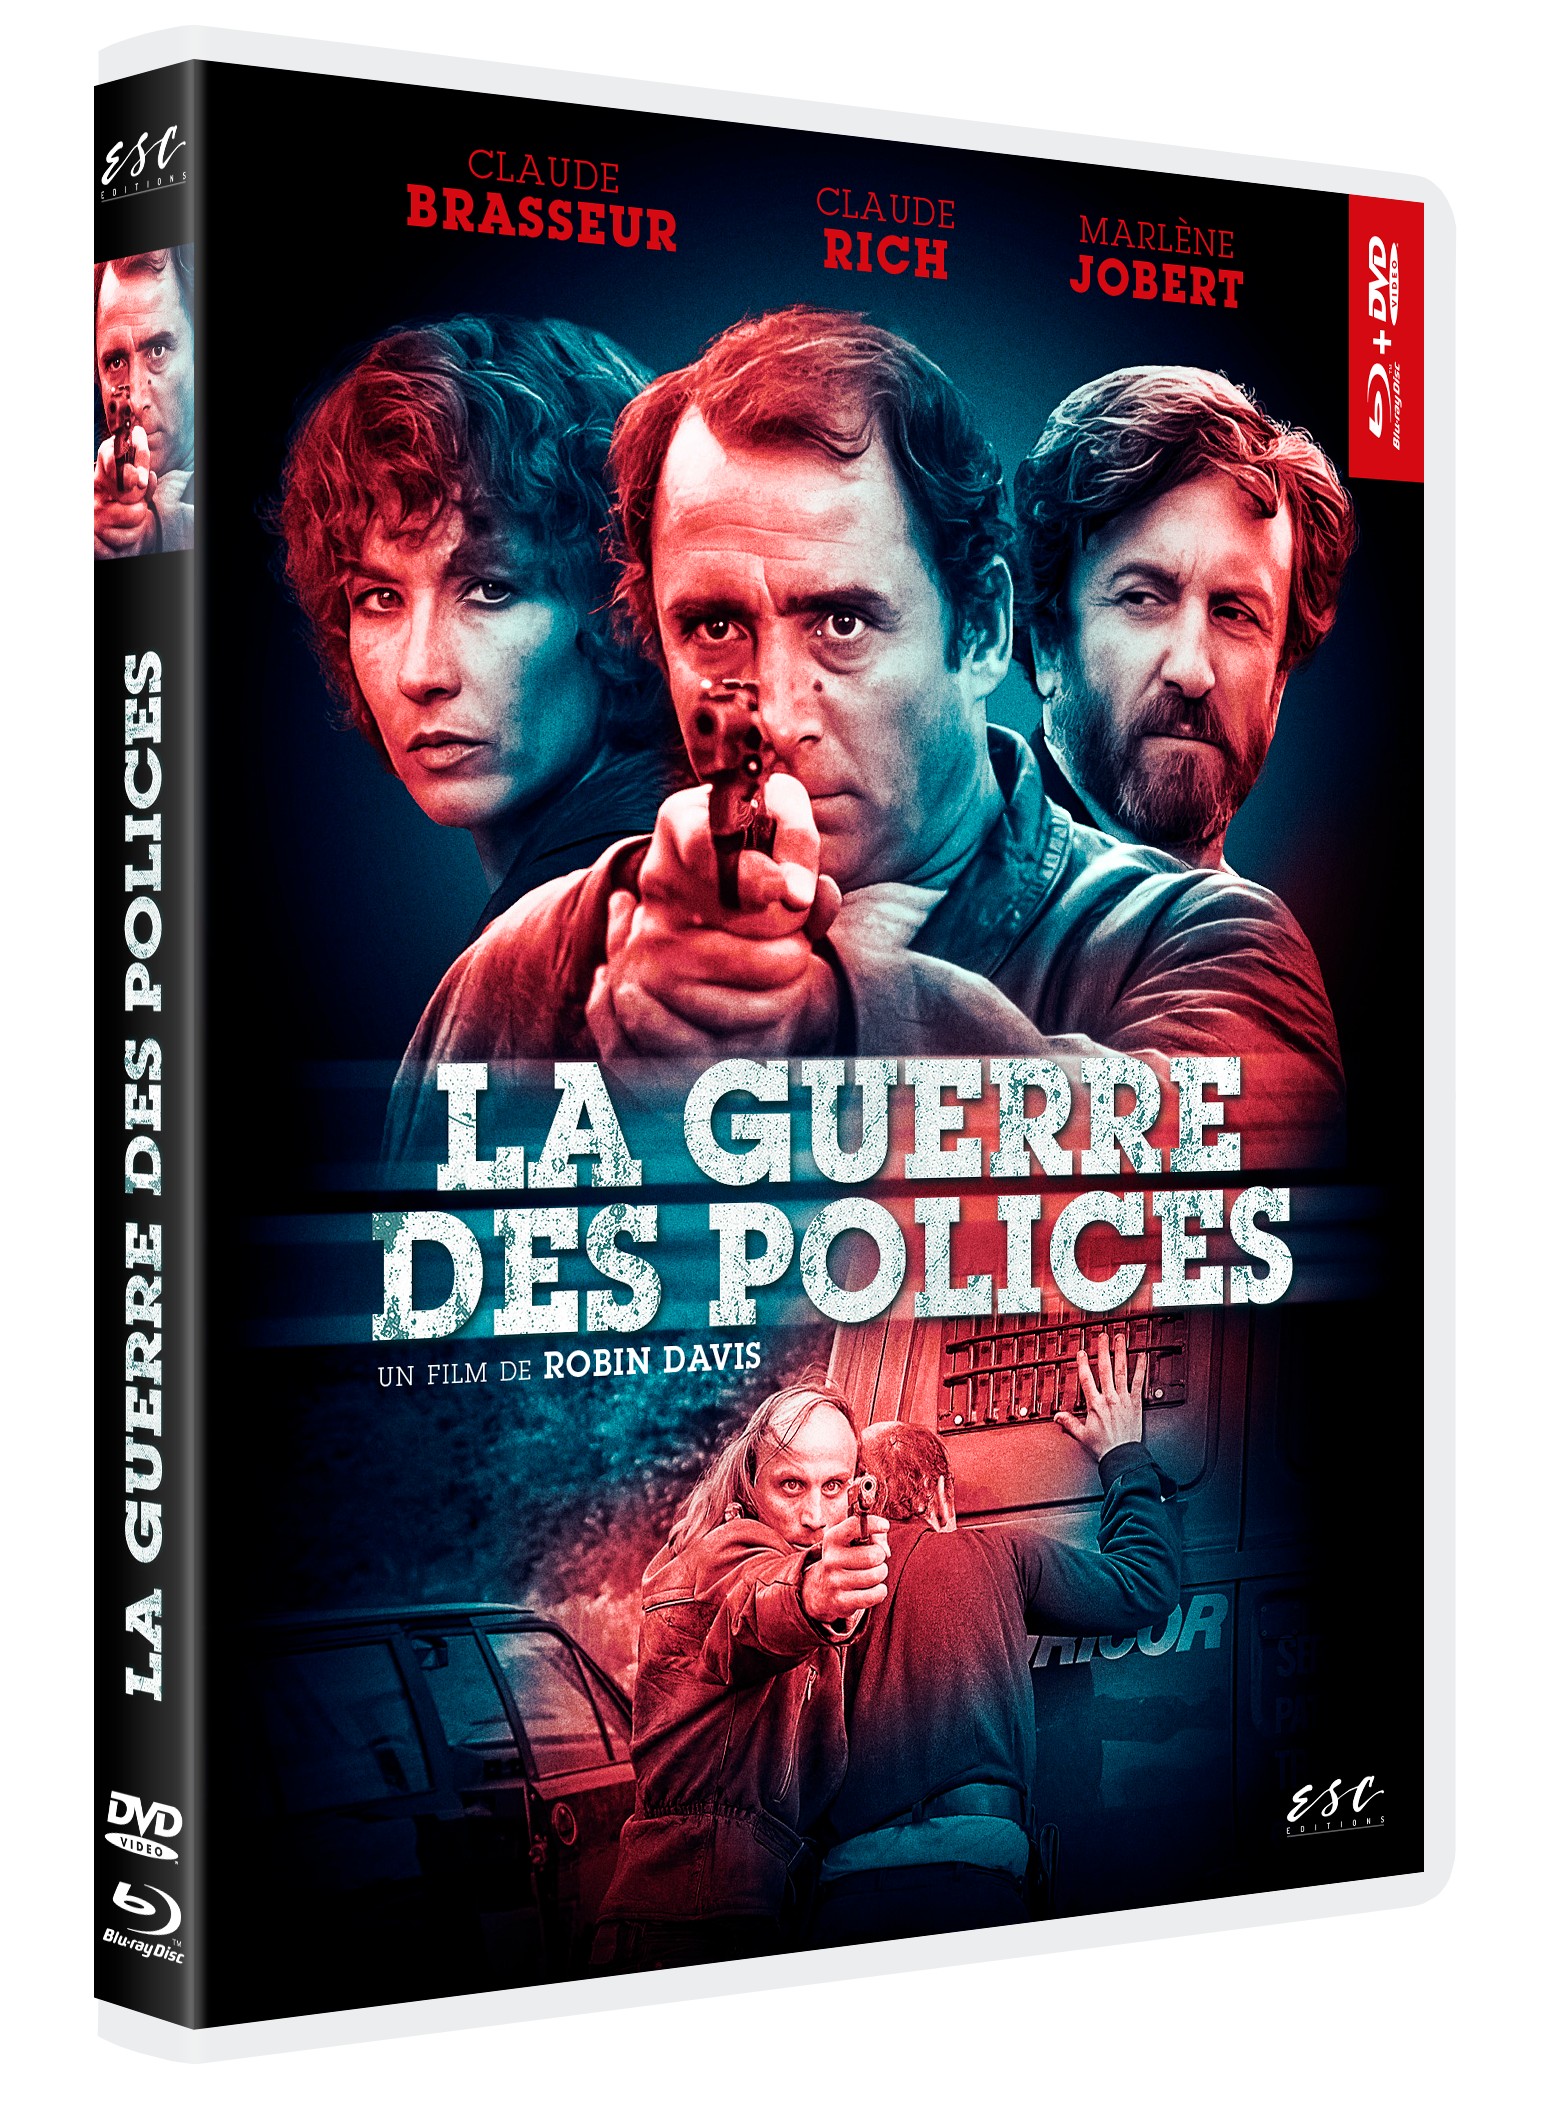 LA GUERRE DES POLICES - COMBO DVD + BD - EDITION LIMITEE